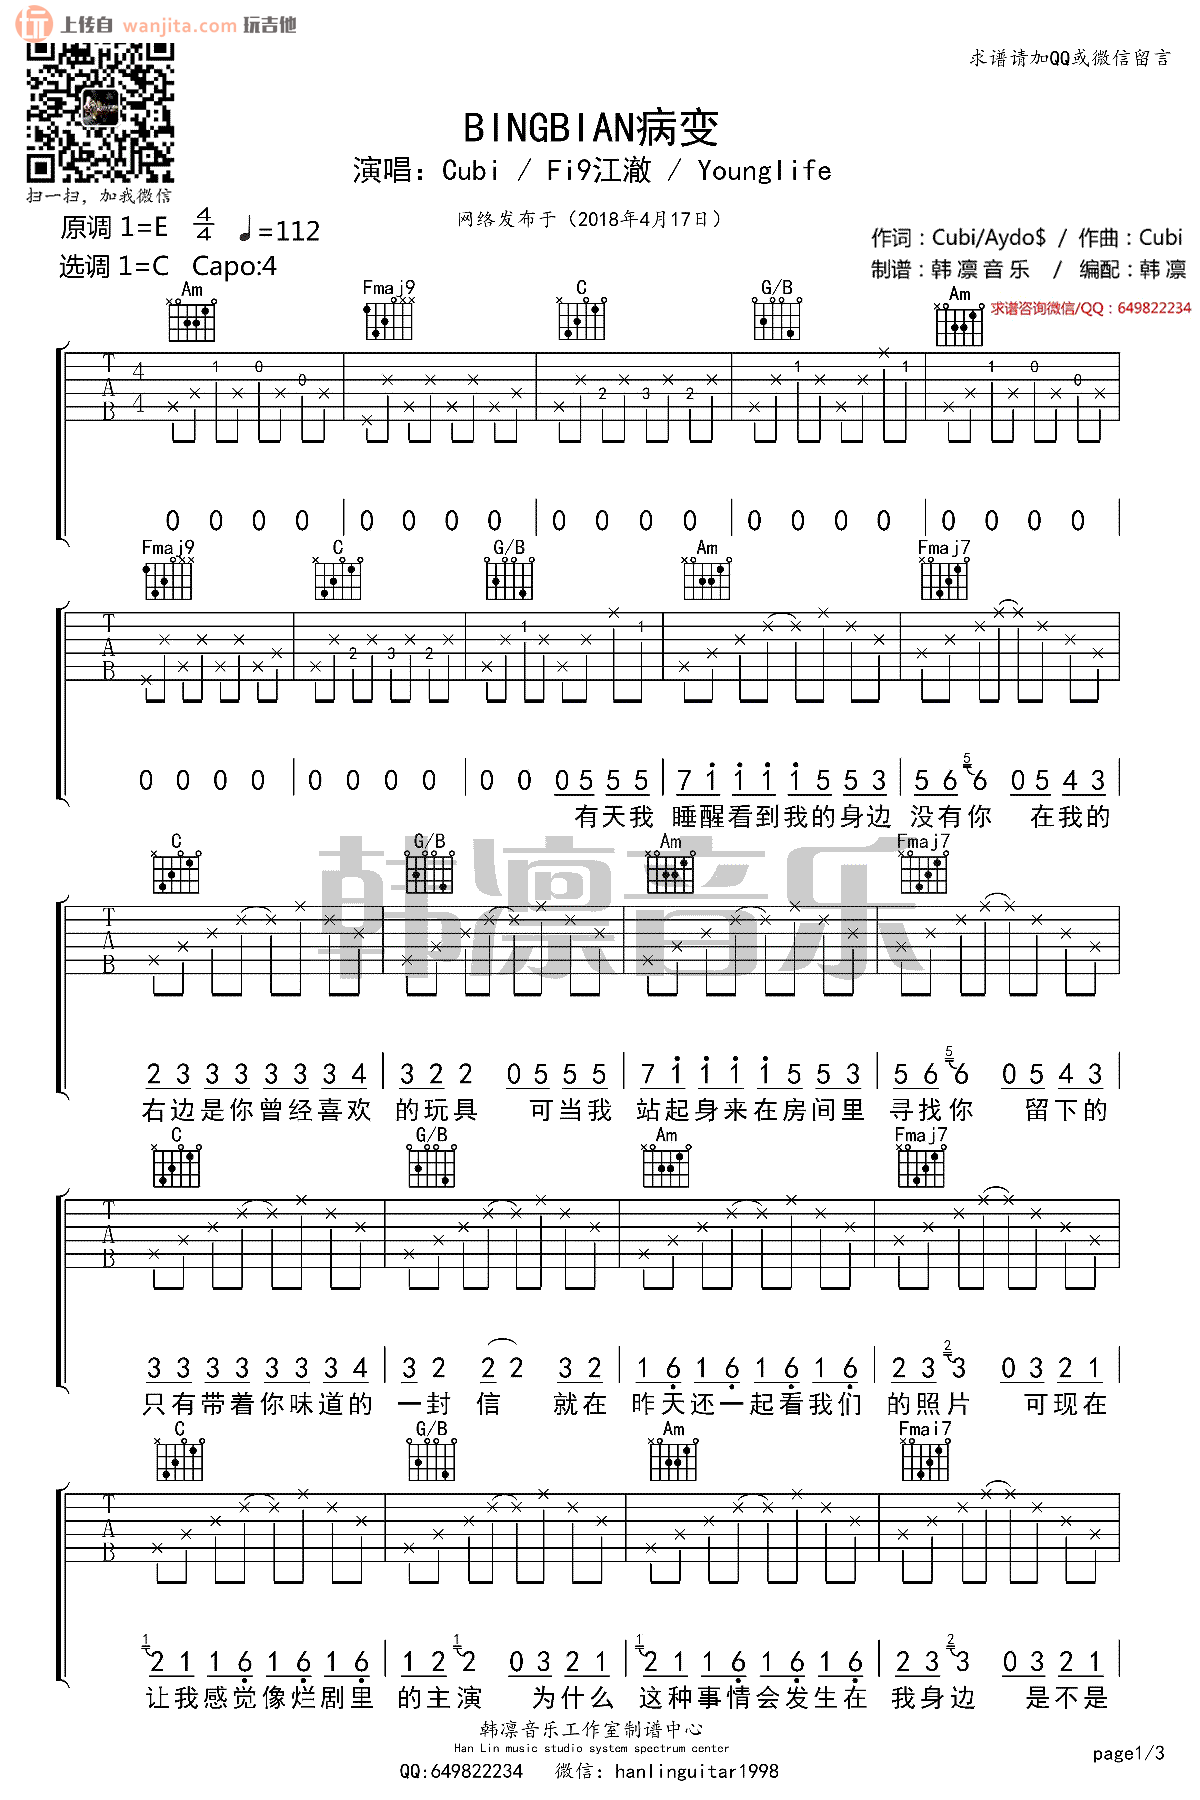 王子韵 - BINGBIAN病变(简单吉他谱 唯音悦制谱) [唯音悦 弹唱] 吉他谱